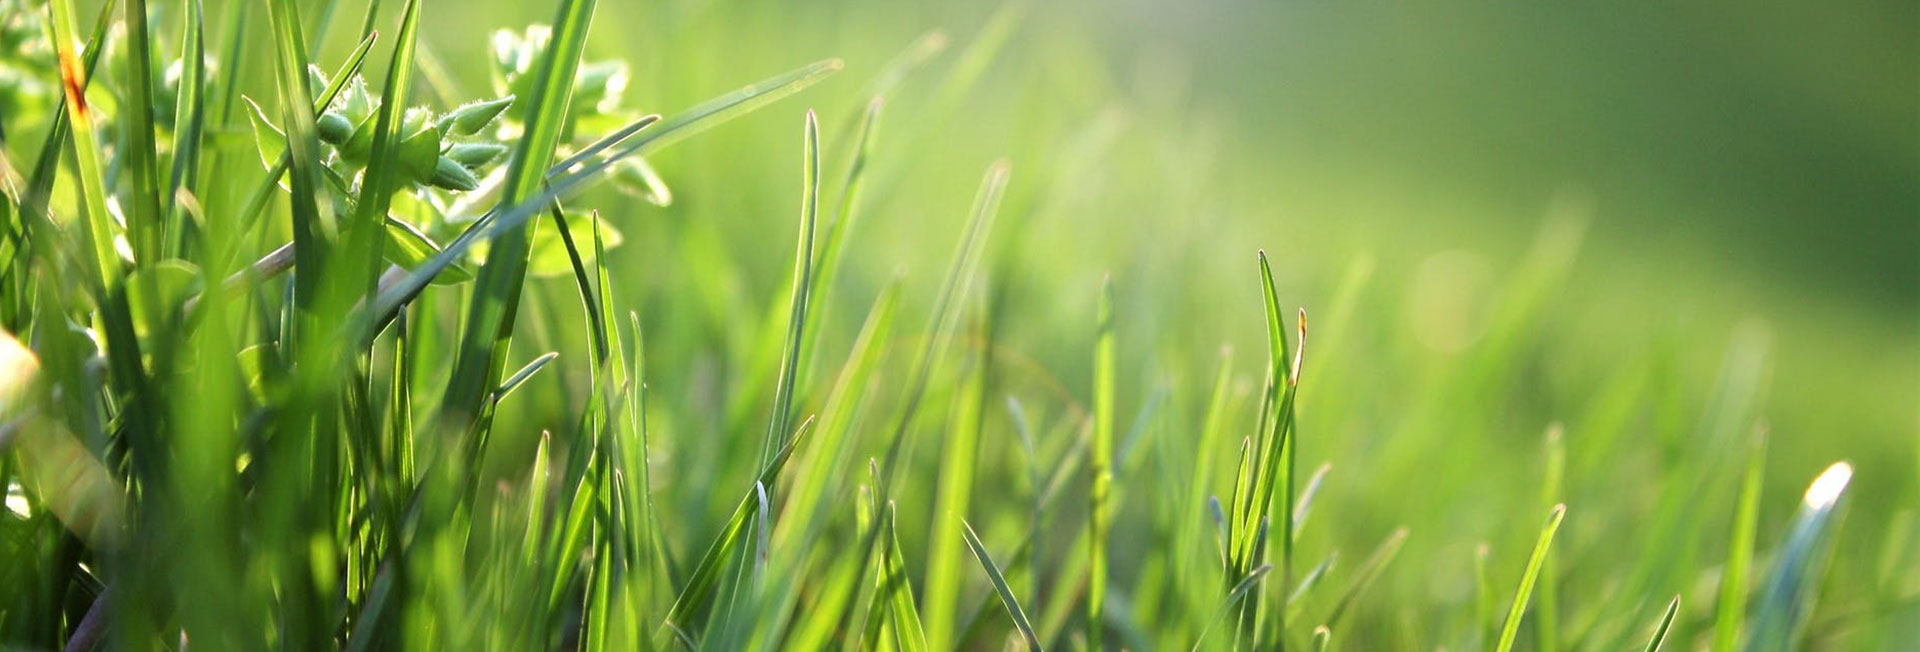 10 Top Tipps für einen gesunden Rasen